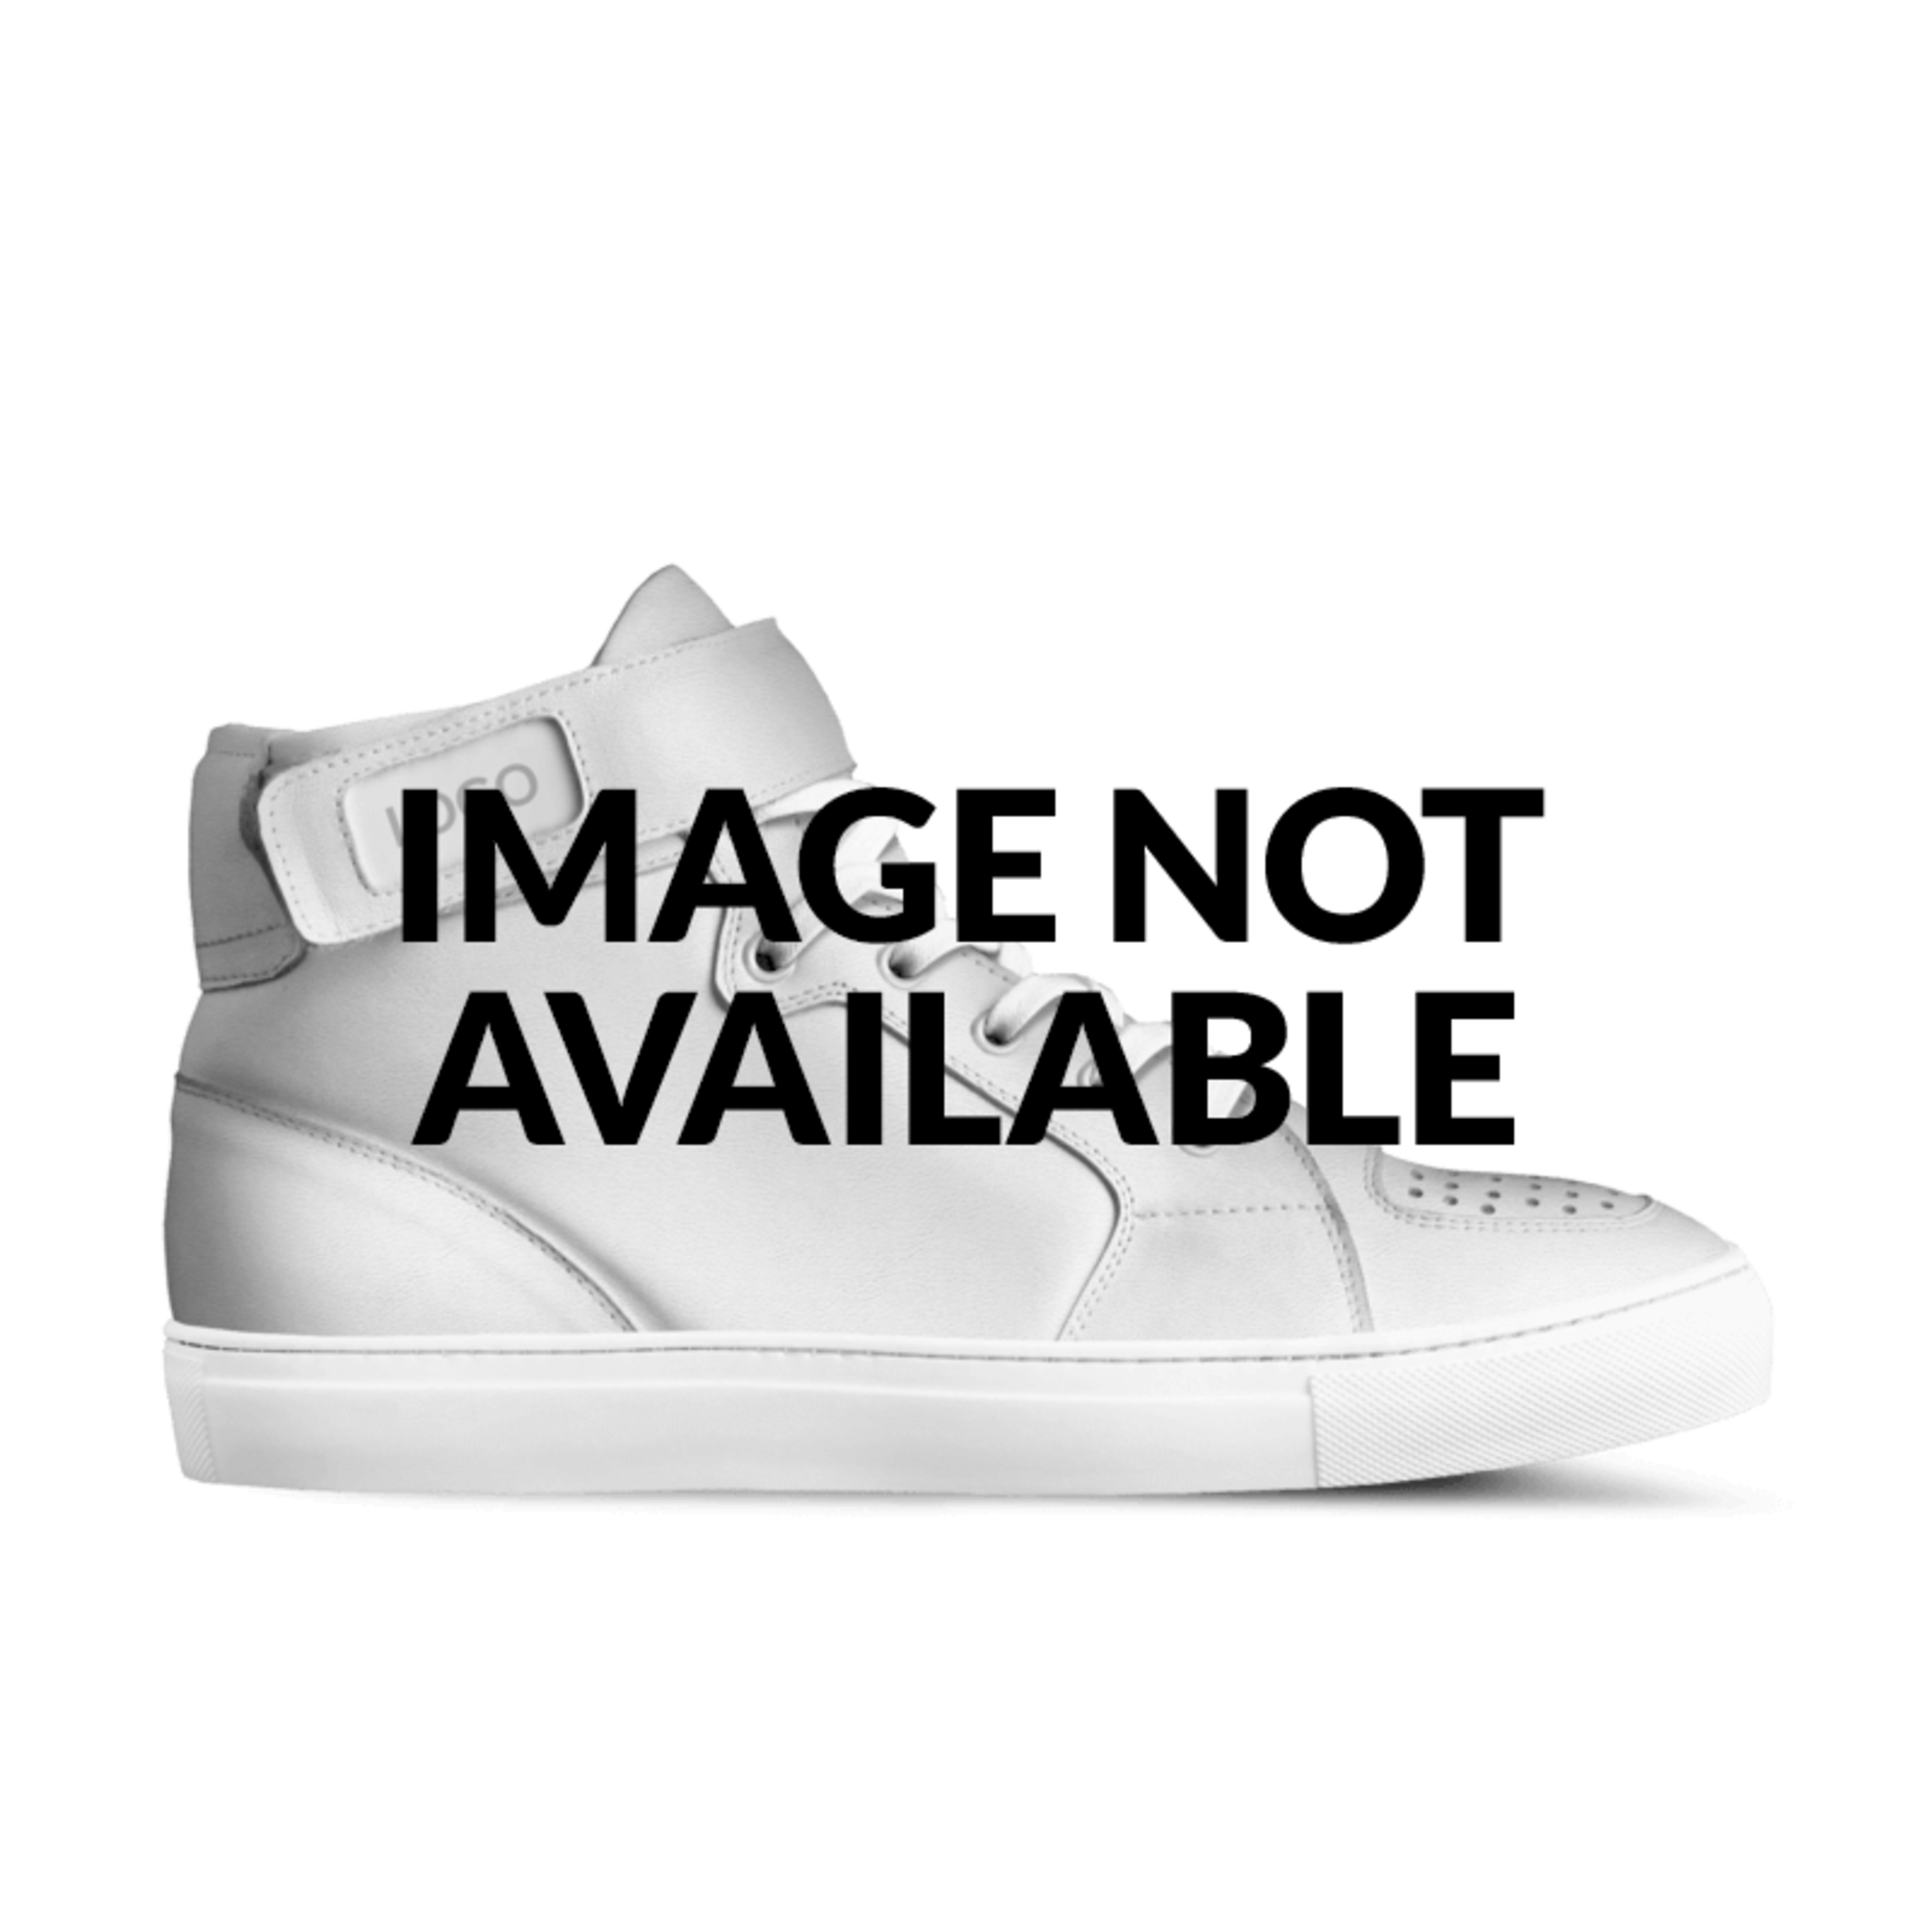 A Custom Shoe concept by Redstar Mafia